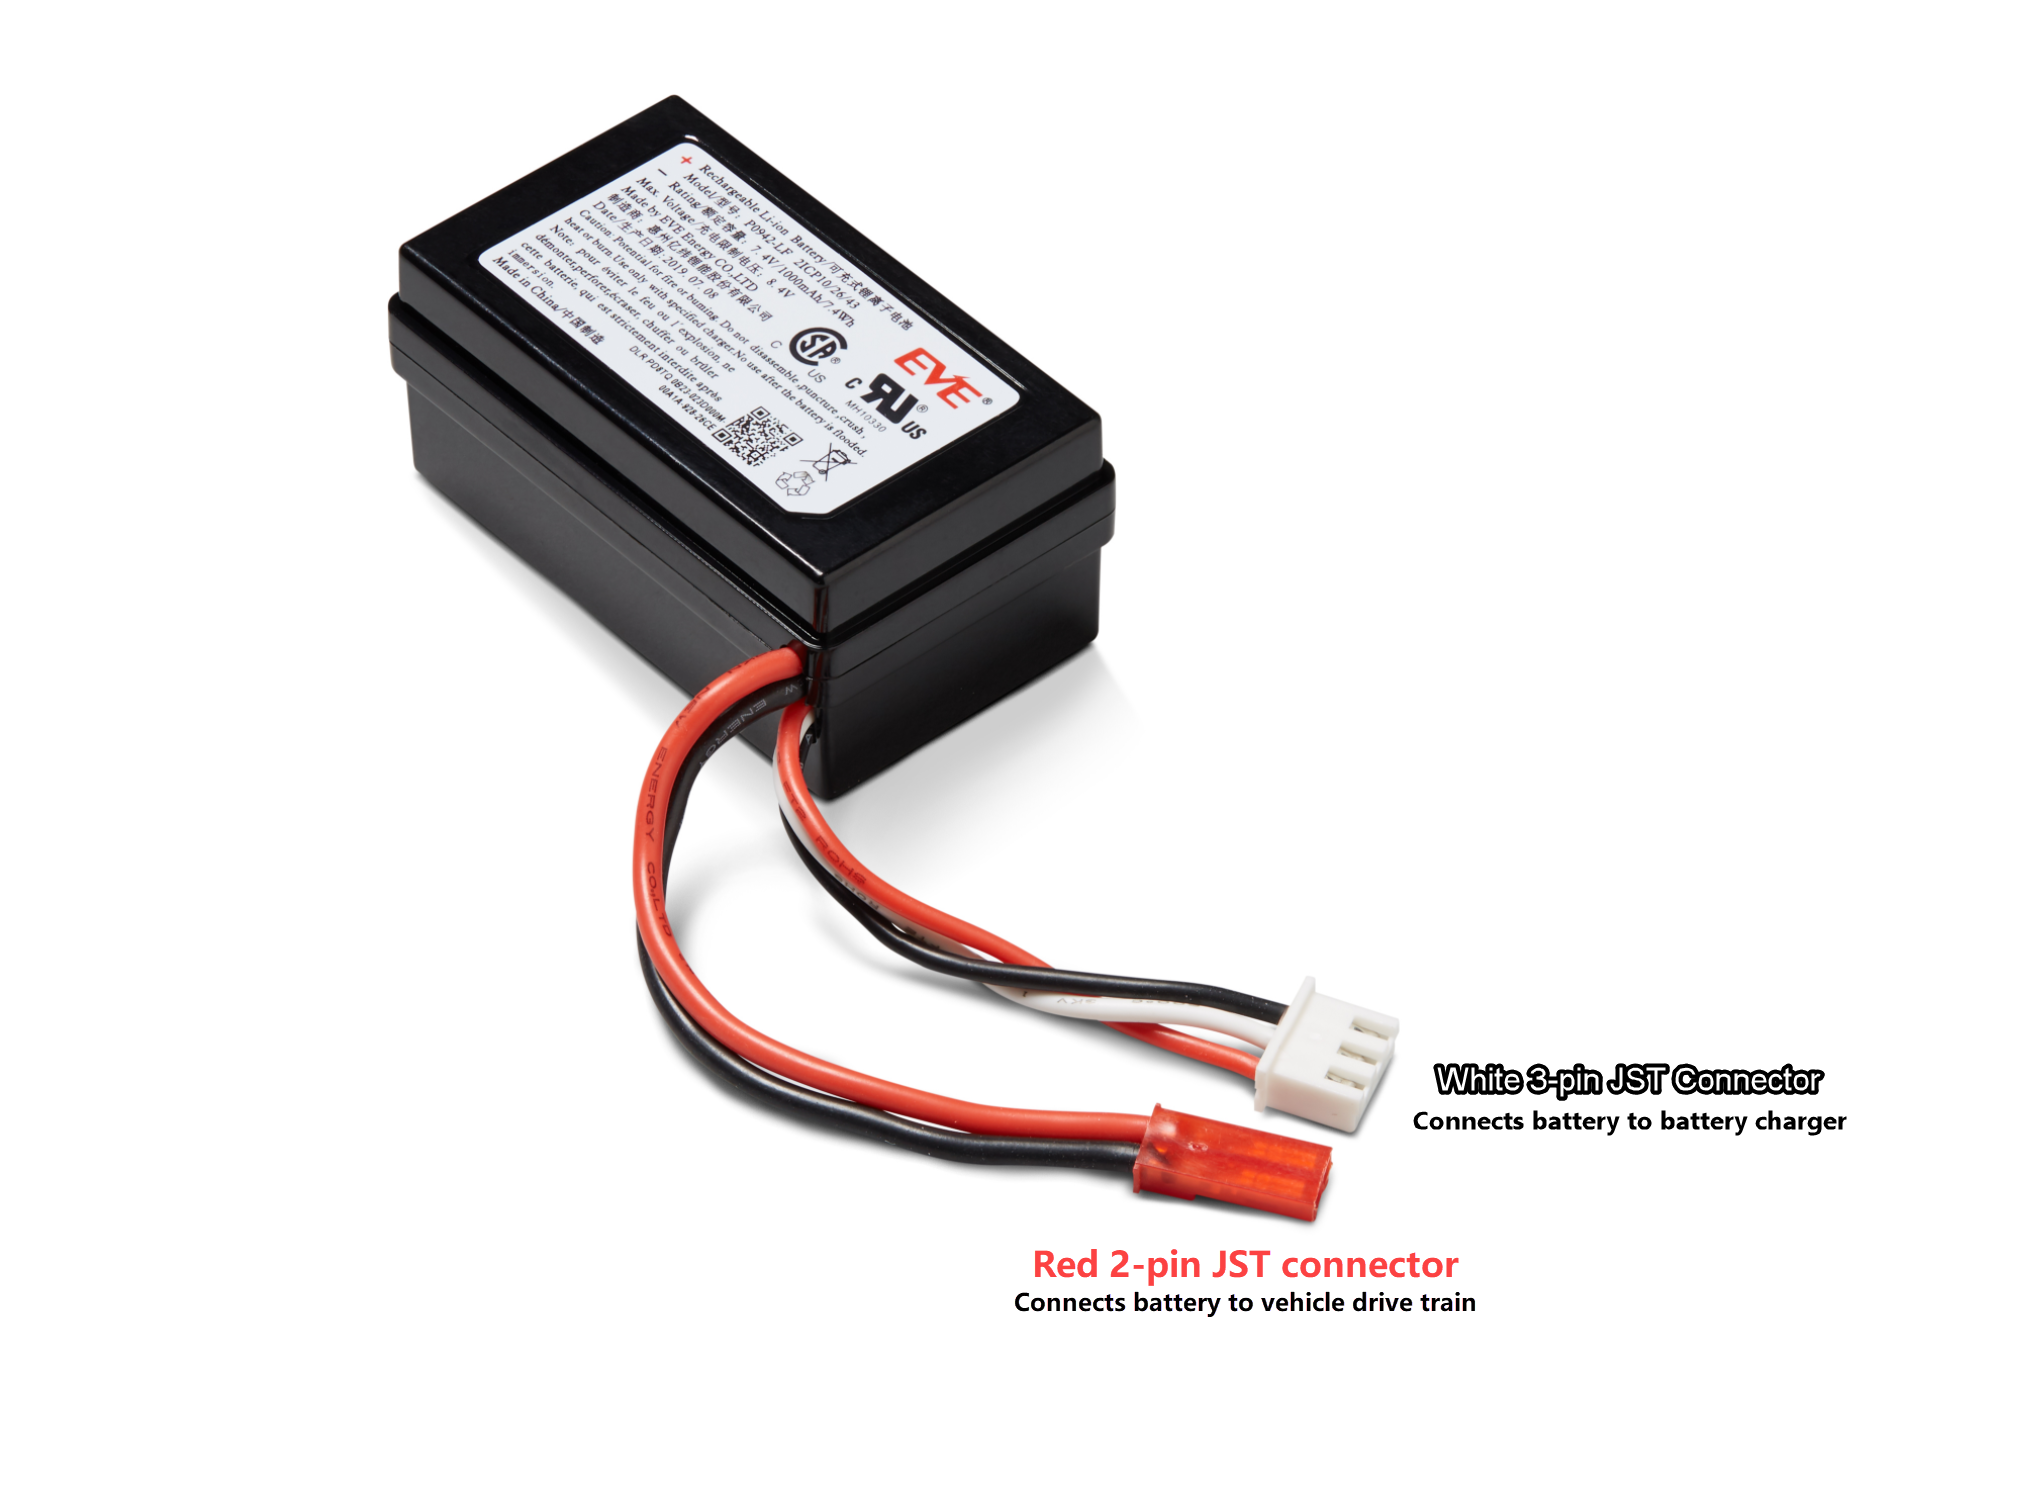 Citra: Konektor merah dan putih modul baterai drive kendaraan diberi label. Konektor 3-pin putih, di ujung kabel hitam, merah, dan putih, menghubungkan modul baterai kendaraan ke pengisi baterai. Konektor 2-pin merah, di ujung kabel hitam dan merah menghubungkan baterai ke sistem otomatis drive kendaraan.